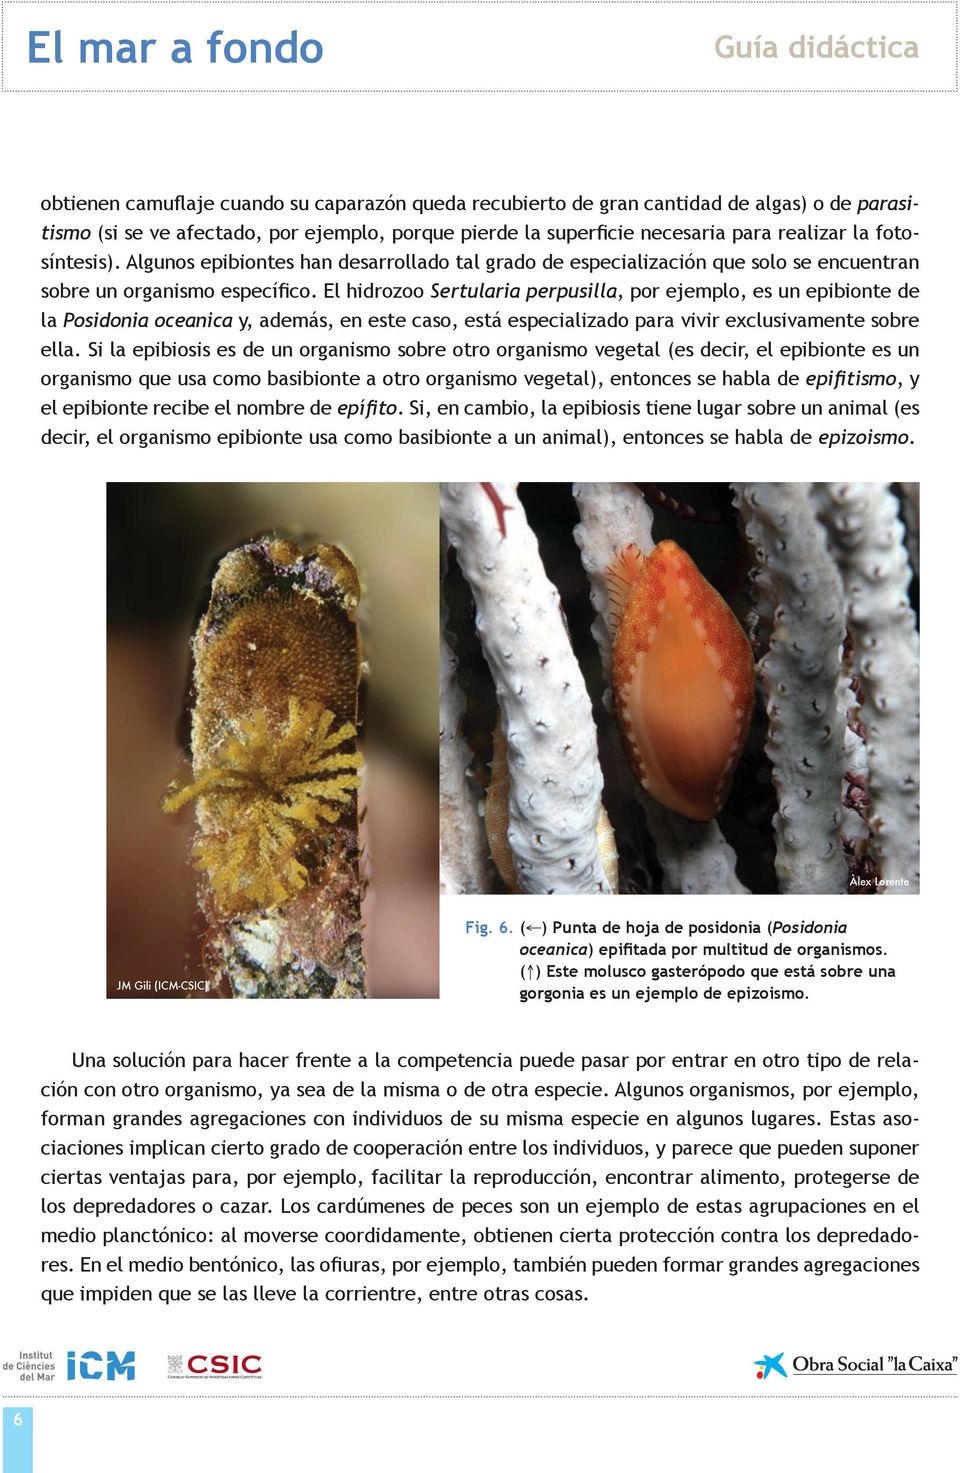 El hidrozoo Sertularia perpusilla, por ejemplo, es un epibionte de la Posidonia oceanica y, además, en este caso, está especializado para vivir exclusivamente sobre ella.